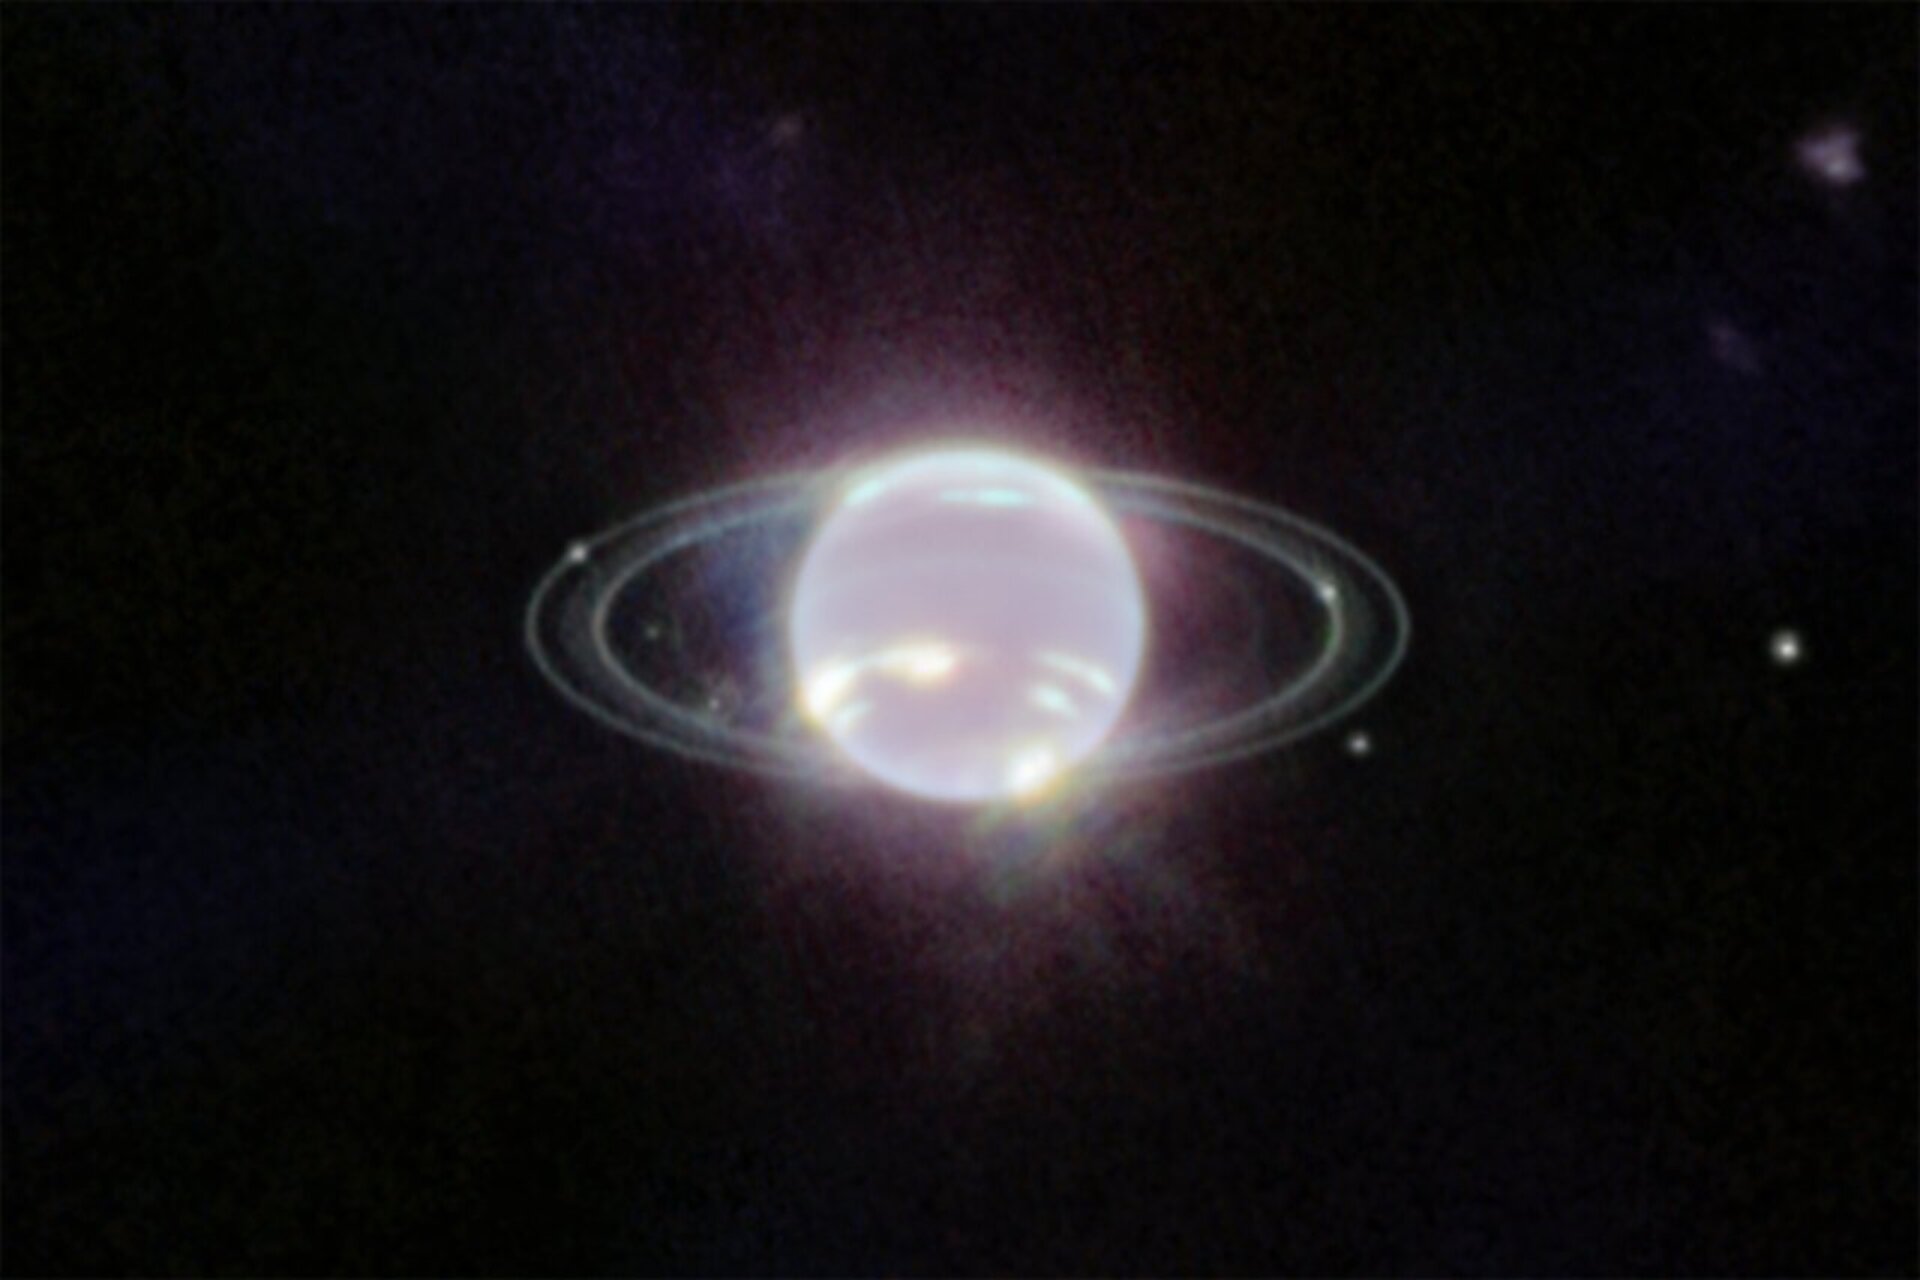 韦伯于 2022 年 7 月 12 日通过近红外相机拍摄的海王星图像。这张图片中海王星大气层最突出的特征是该行星南半球的一系列明亮斑块，它们代表了高海拔的甲烷冰云。 更微妙的是，环绕地球赤道的一条细线可能是全球大气环流的视觉特征，它为海王星的风和风暴提供动力。 此外，韦伯首次表现出围绕着海王星南极一个先前已知的涡旋的连续高纬度云带。